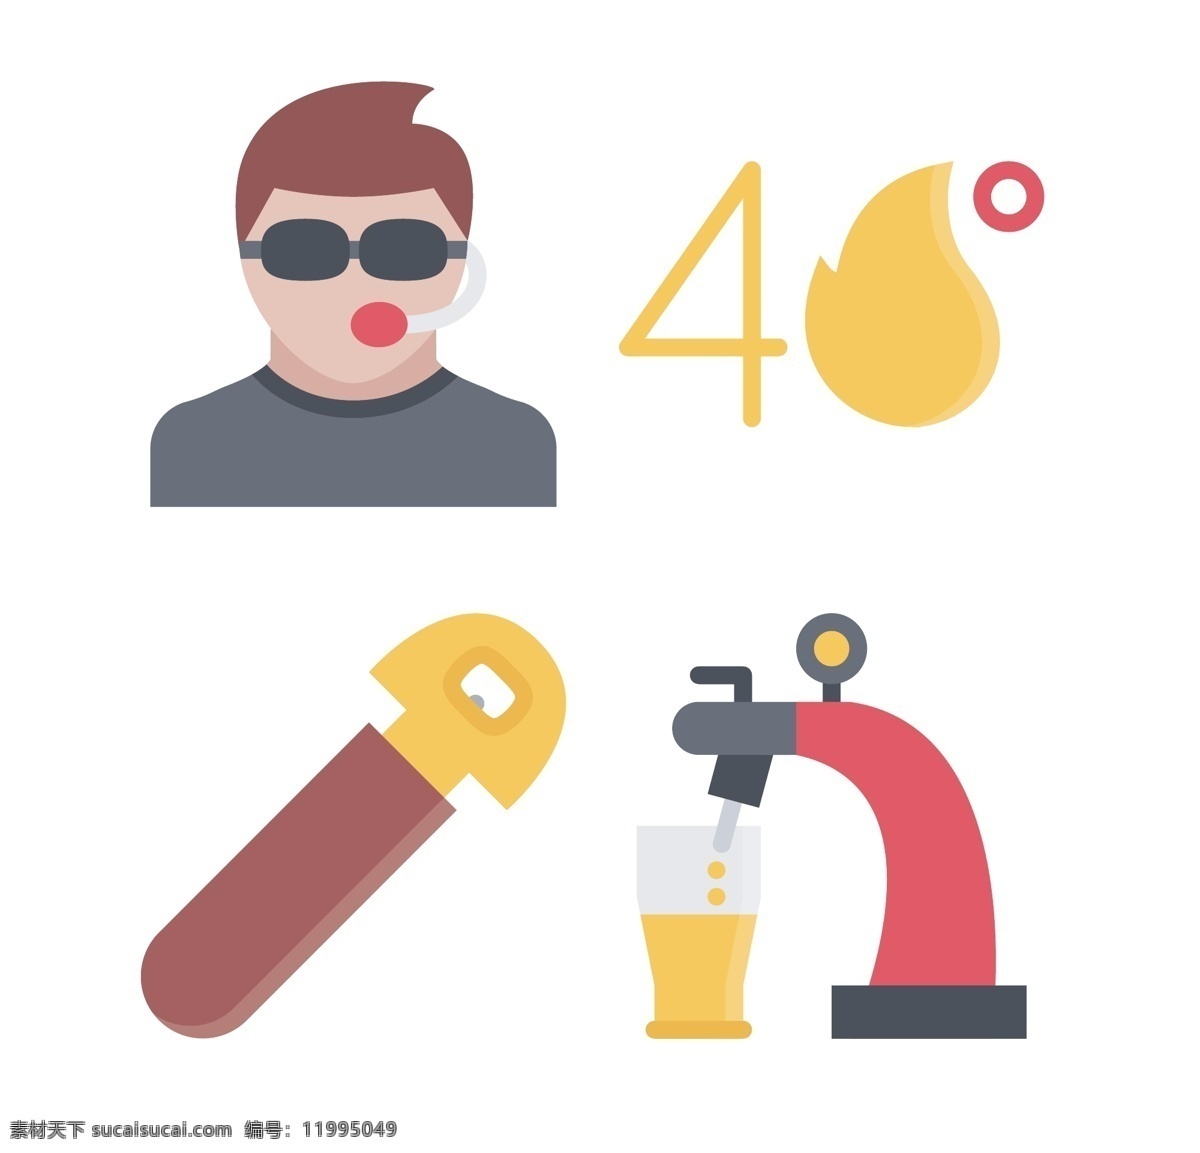 聚会 party 图标 icon 按钮 啤酒 香烟 饮品 食品 简约图标 商务图标 网页元素图标